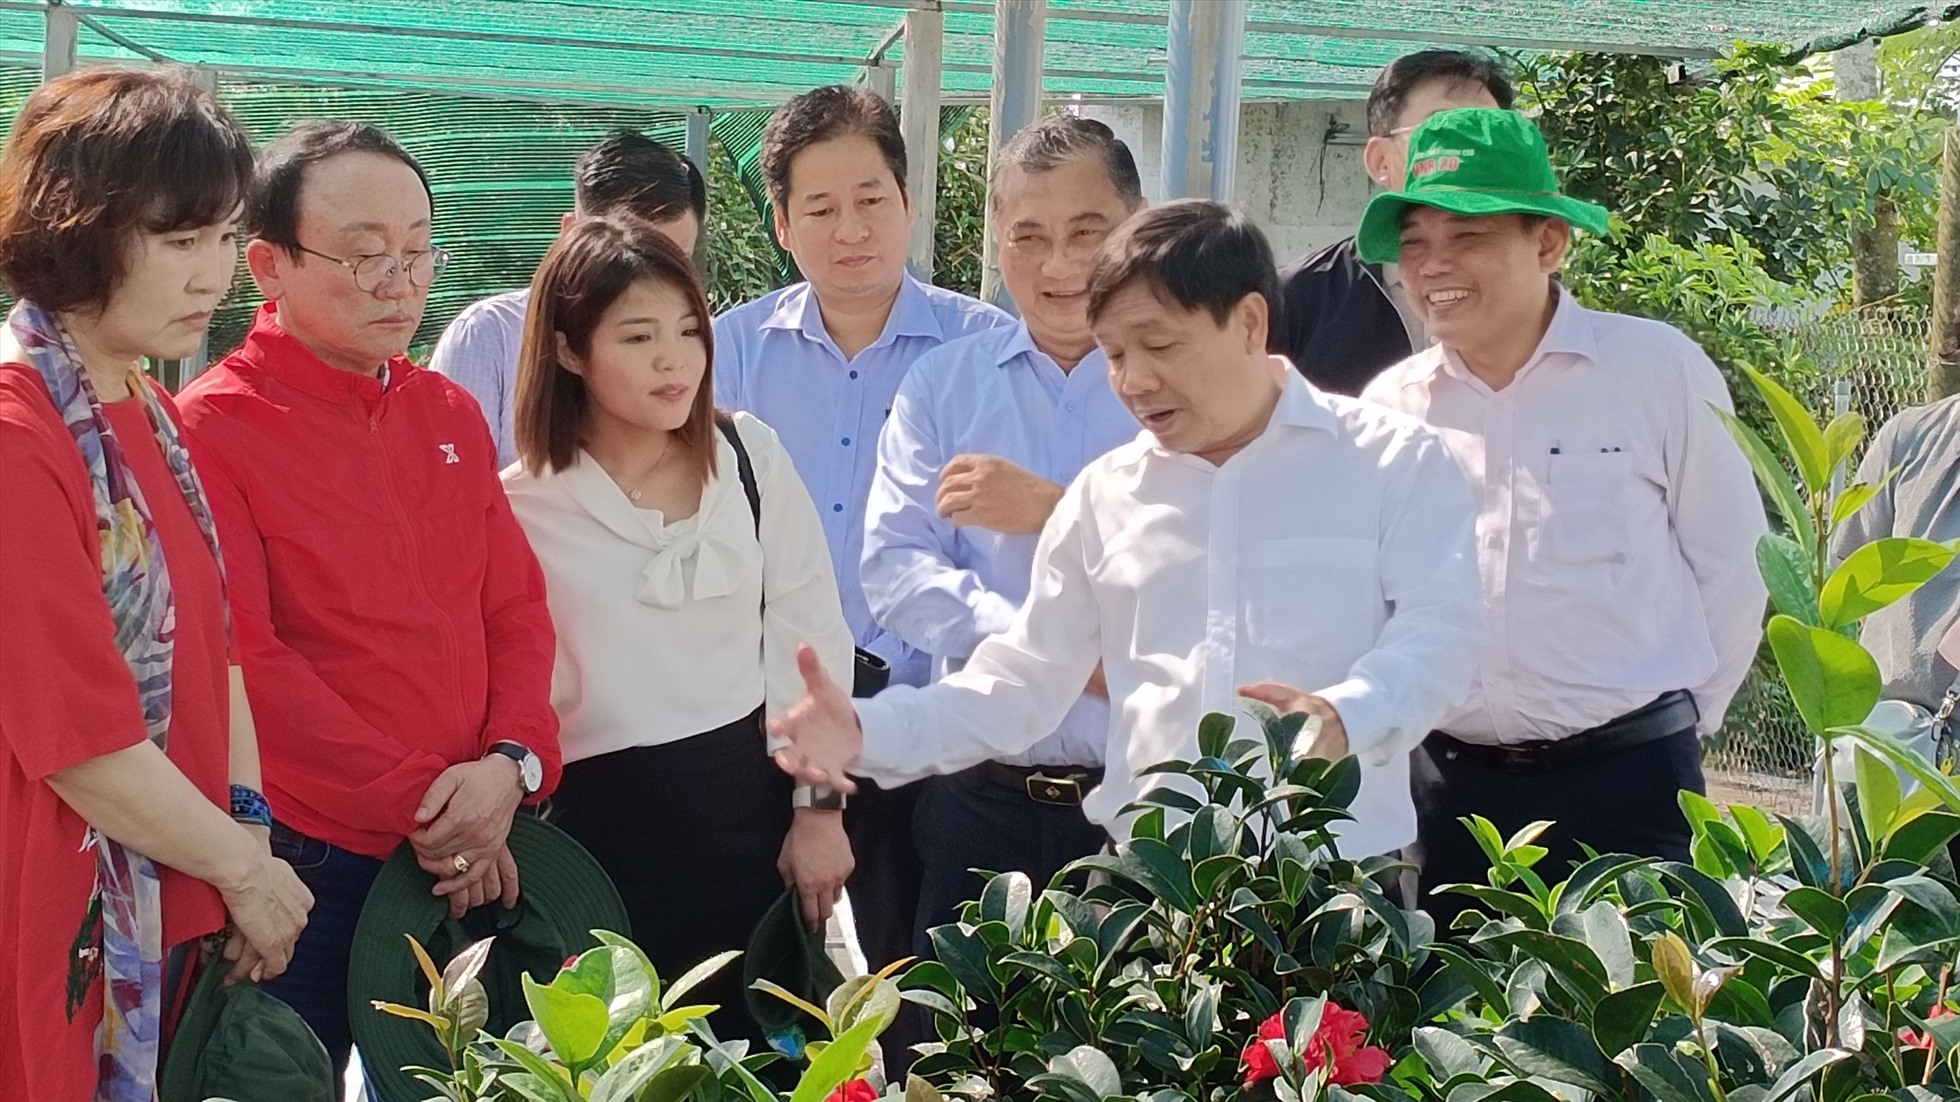 Đoàn đến tham quan tìm hiểu quy trình sản xuất hoa kiểng, tạo dáng bonsai tại làng hoa Sa Đéc. Ảnh: Thanh Nghĩa